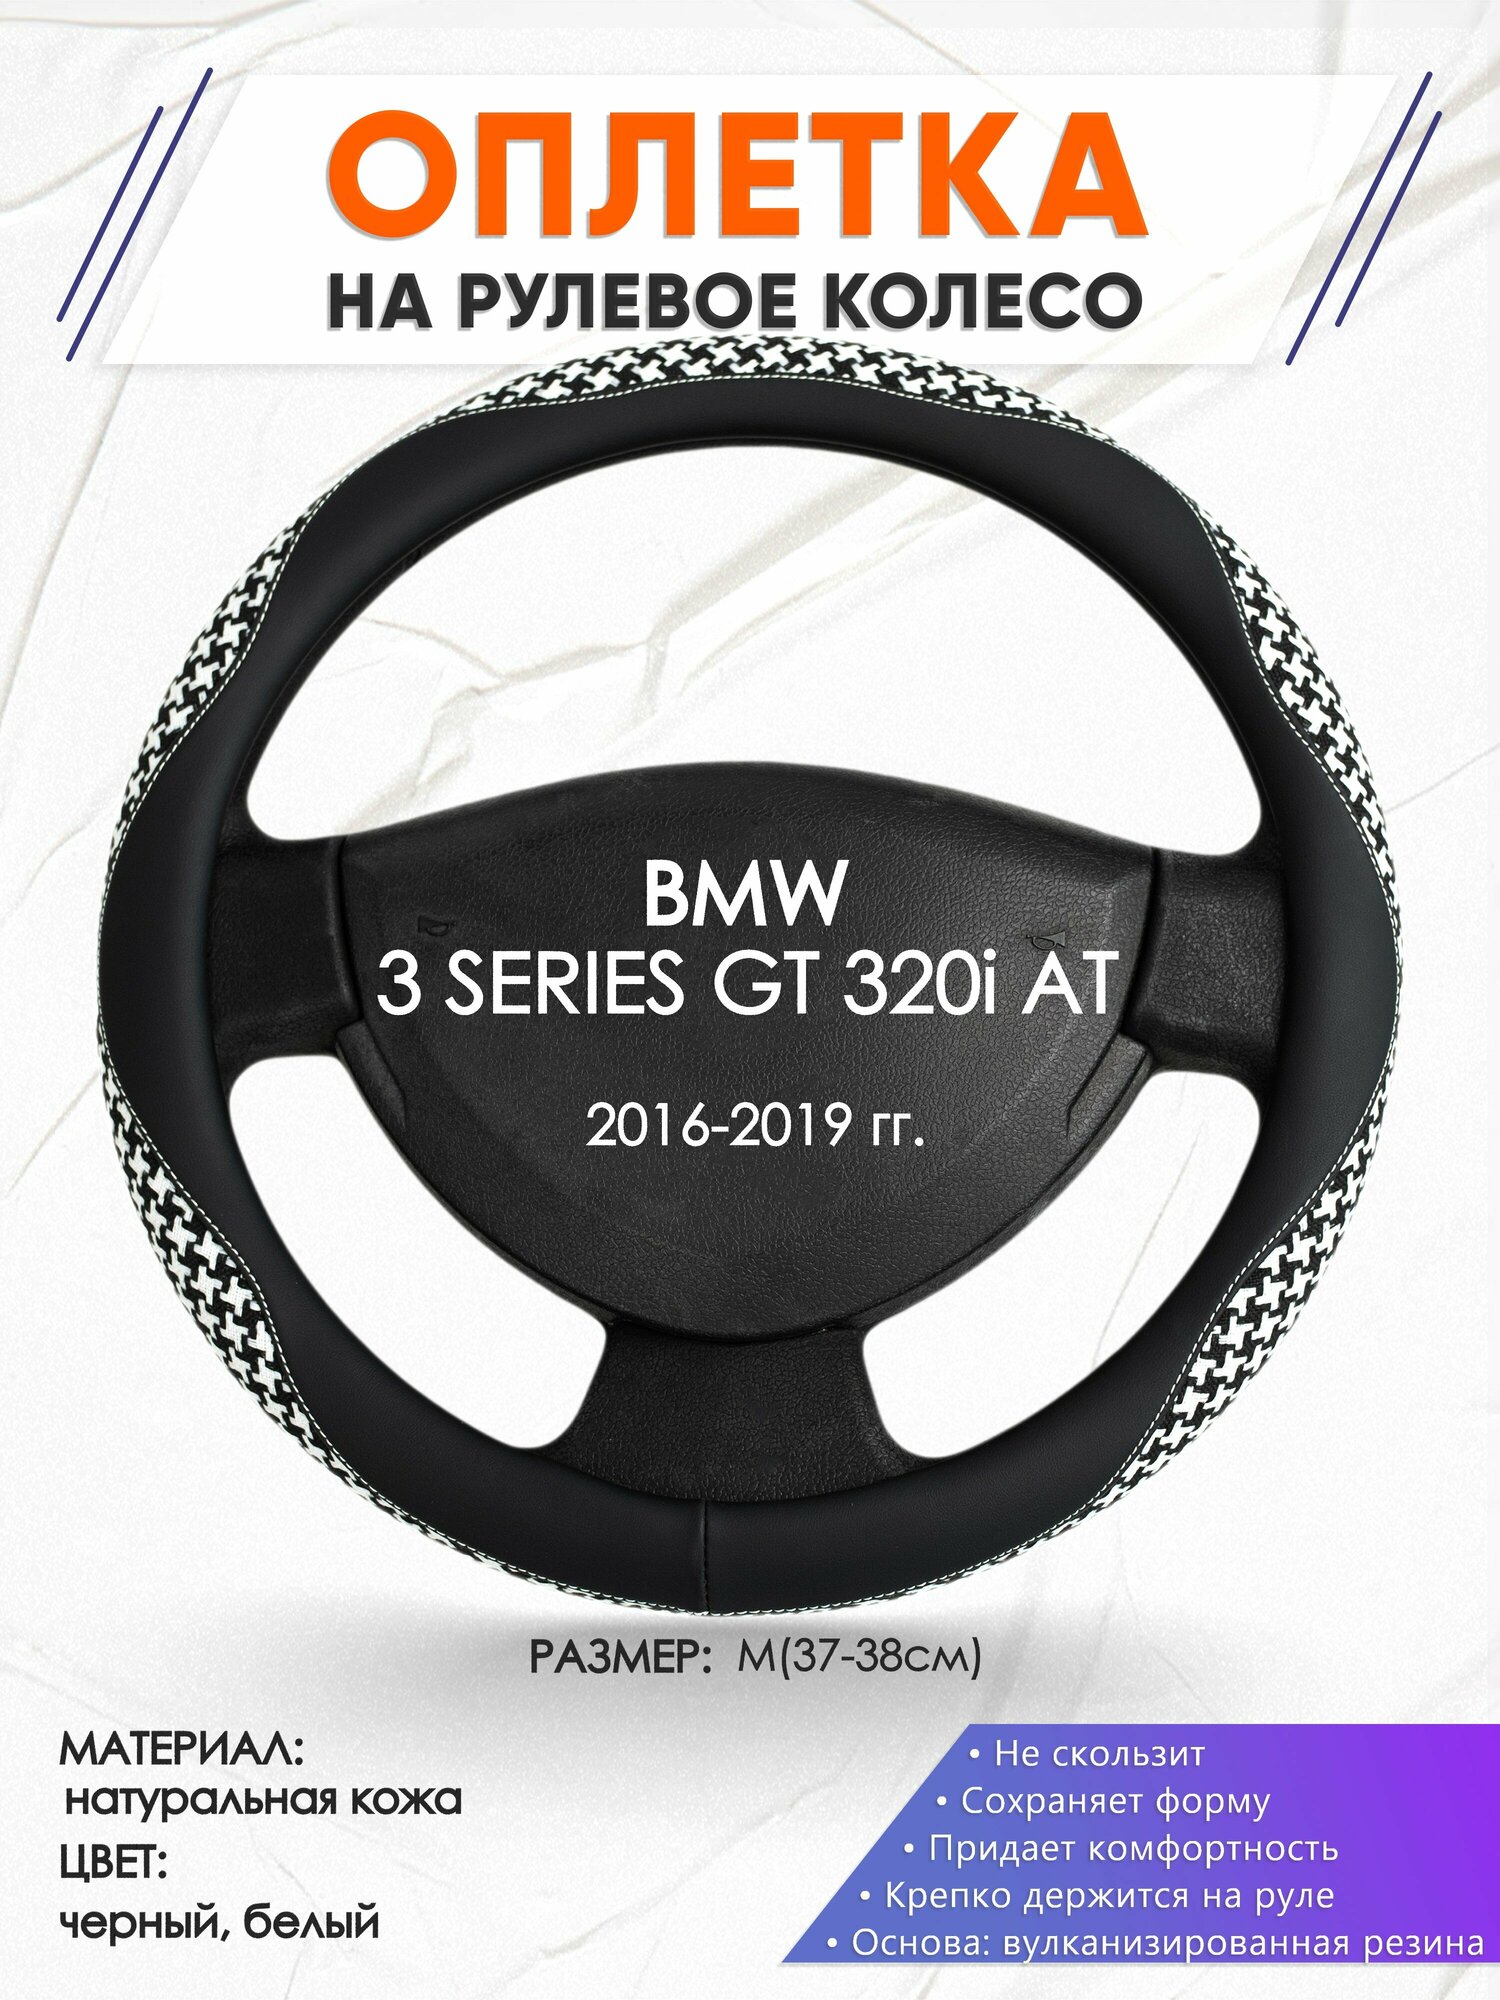 Оплетка наруль для BMW 3 SERIES GT 320i AT(Бмв серия 3 ГТ 320ай) 2016-2019 годов выпуска, размер M(37-38см), Натуральная кожа 21